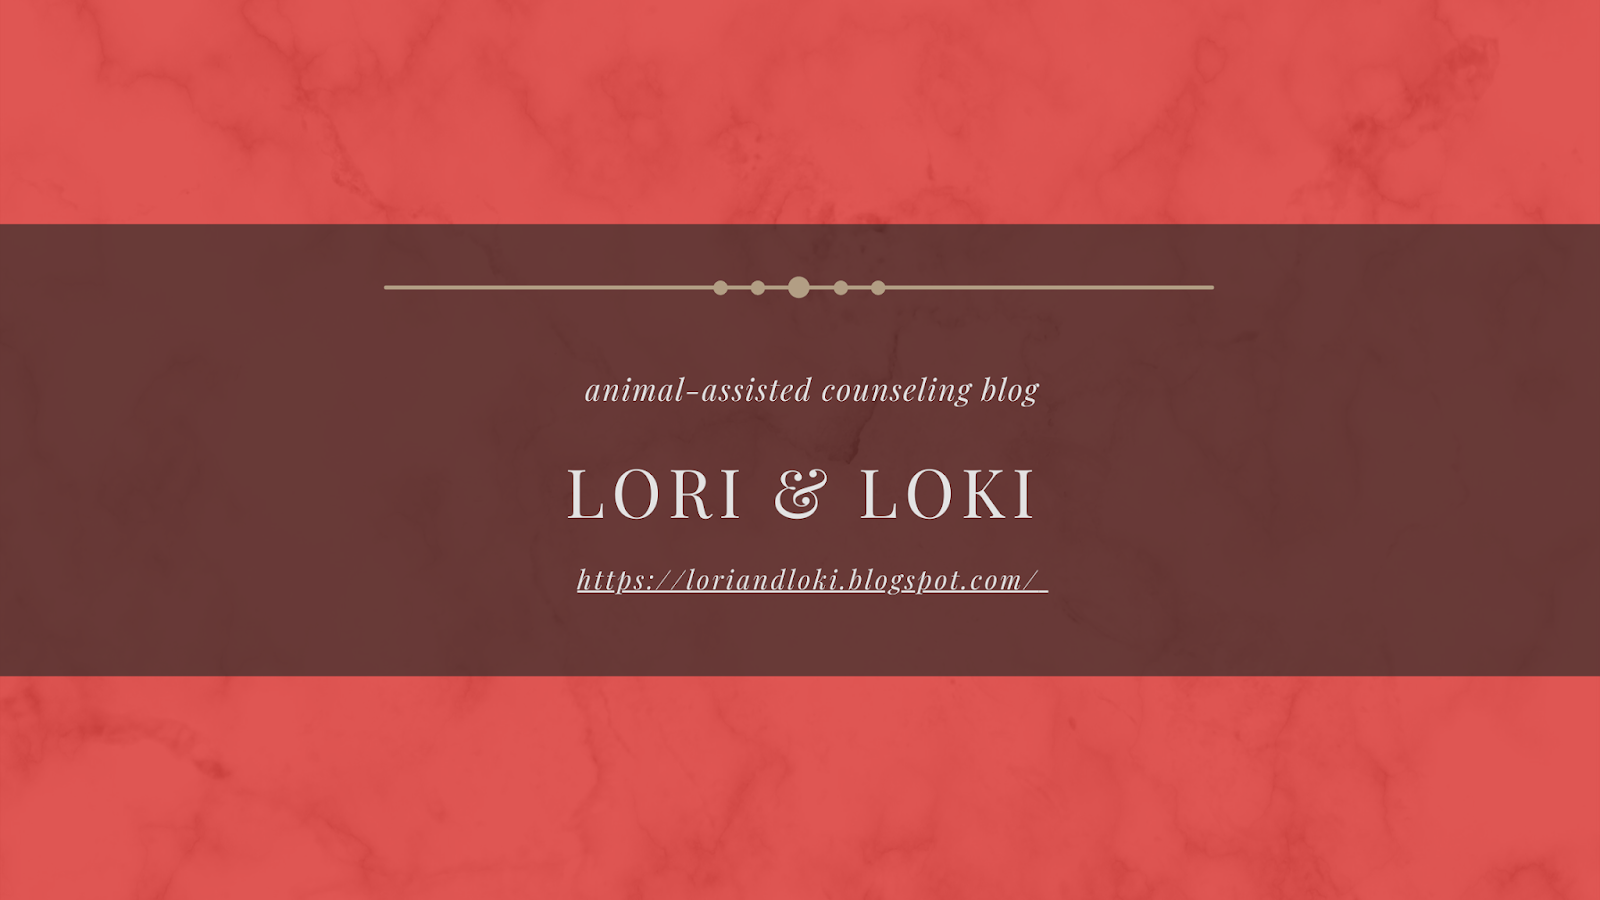 Lori and Loki Take on Mental Health